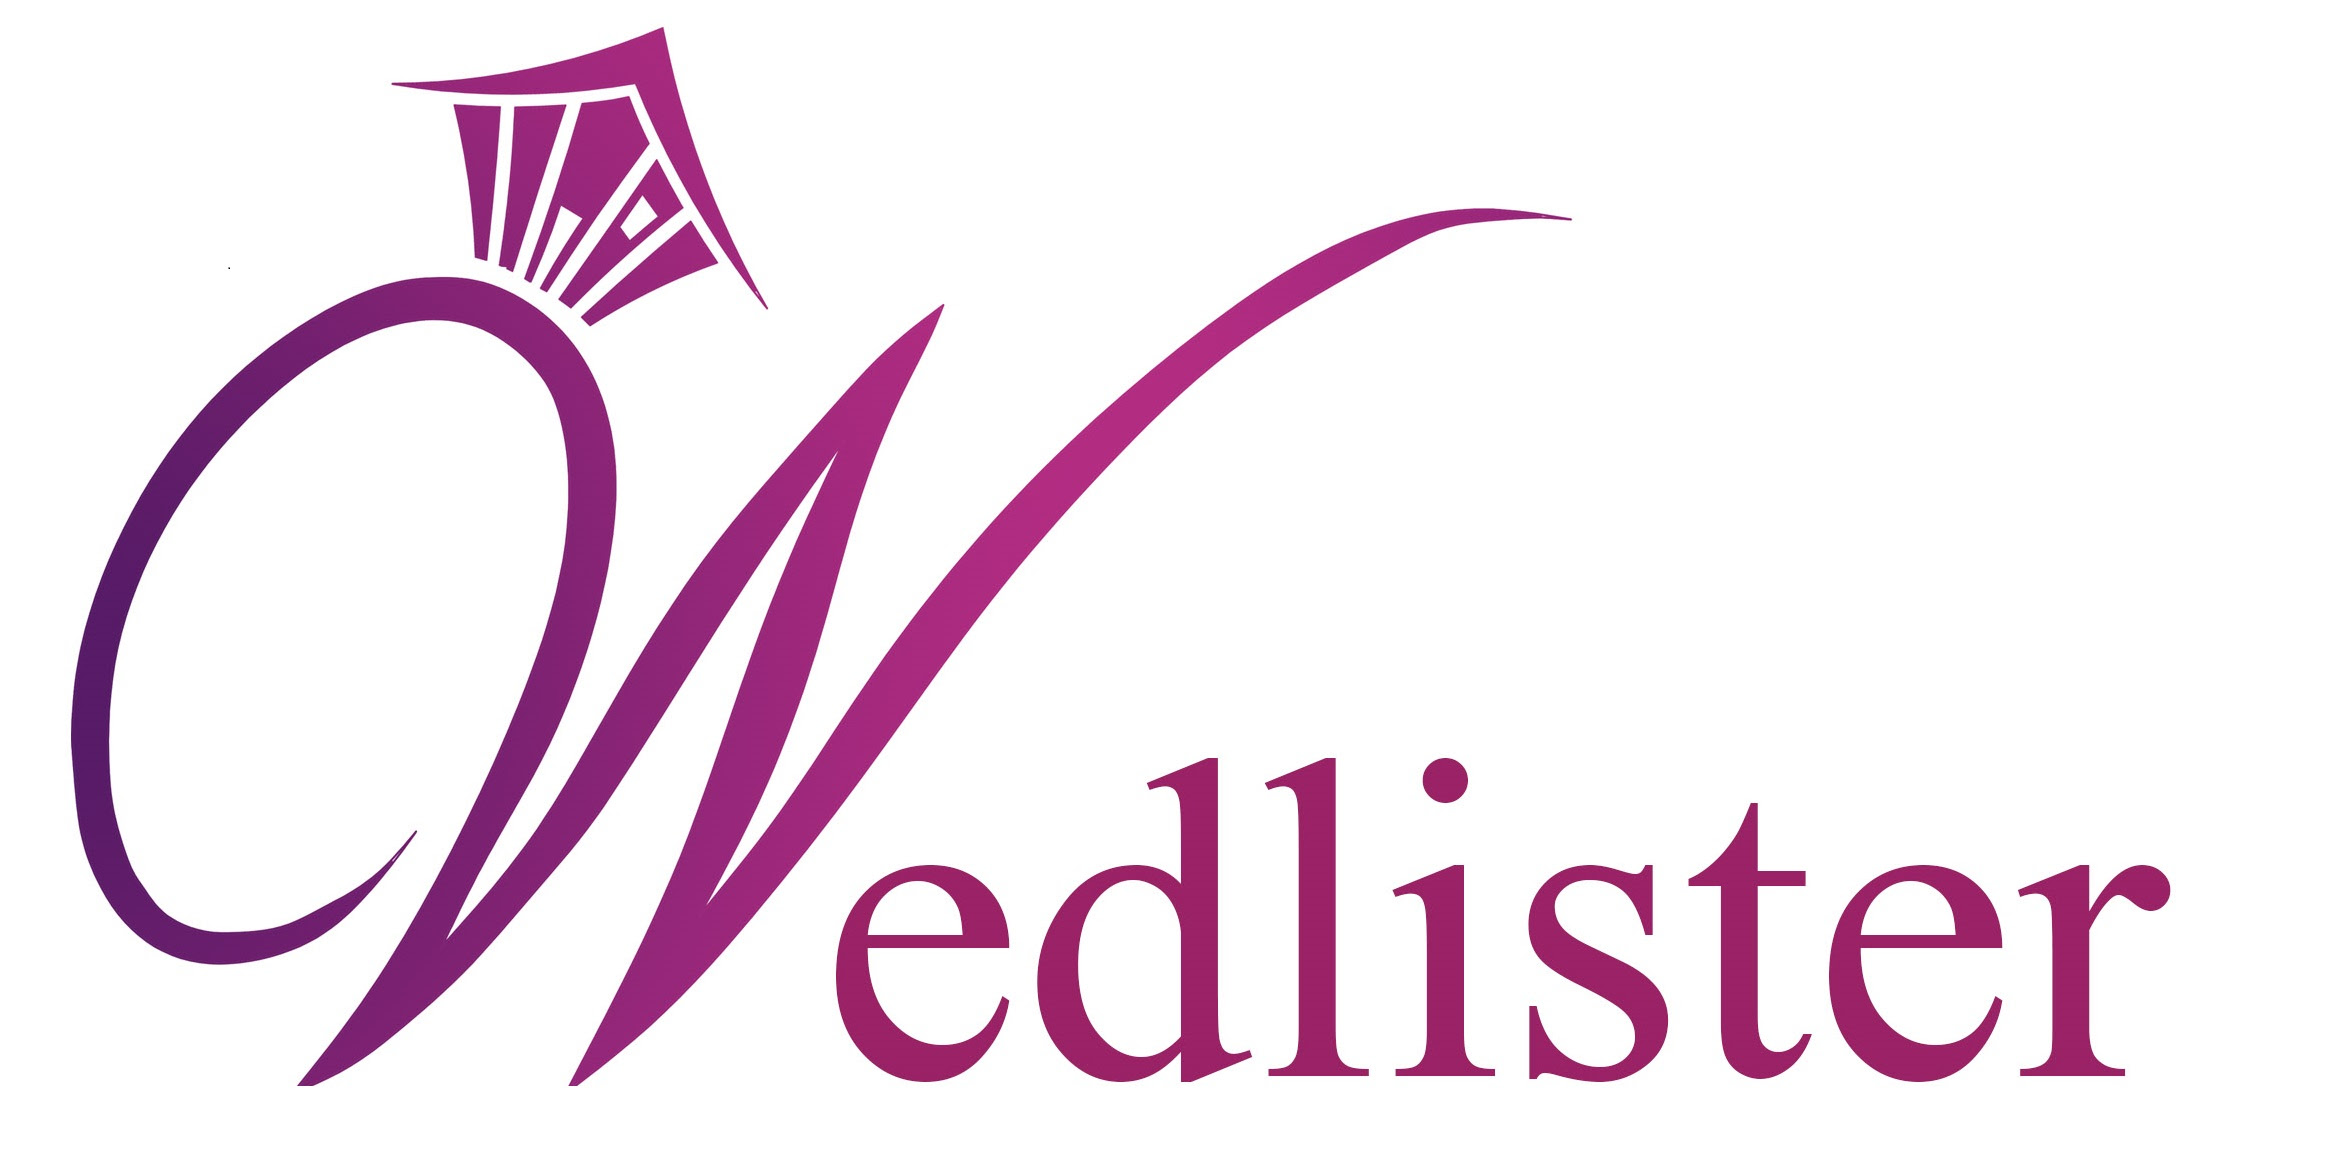 Wedlister.com